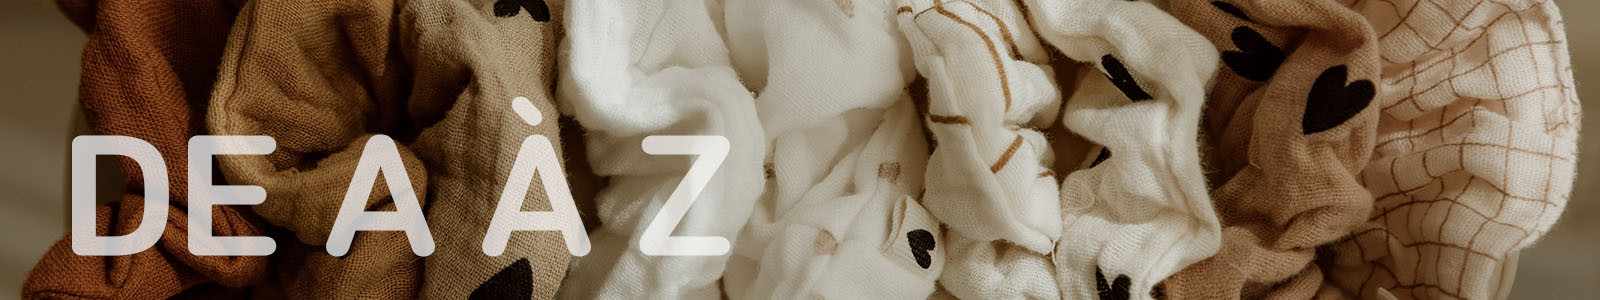 Chouchous gaze de coton | Atelier Wagram